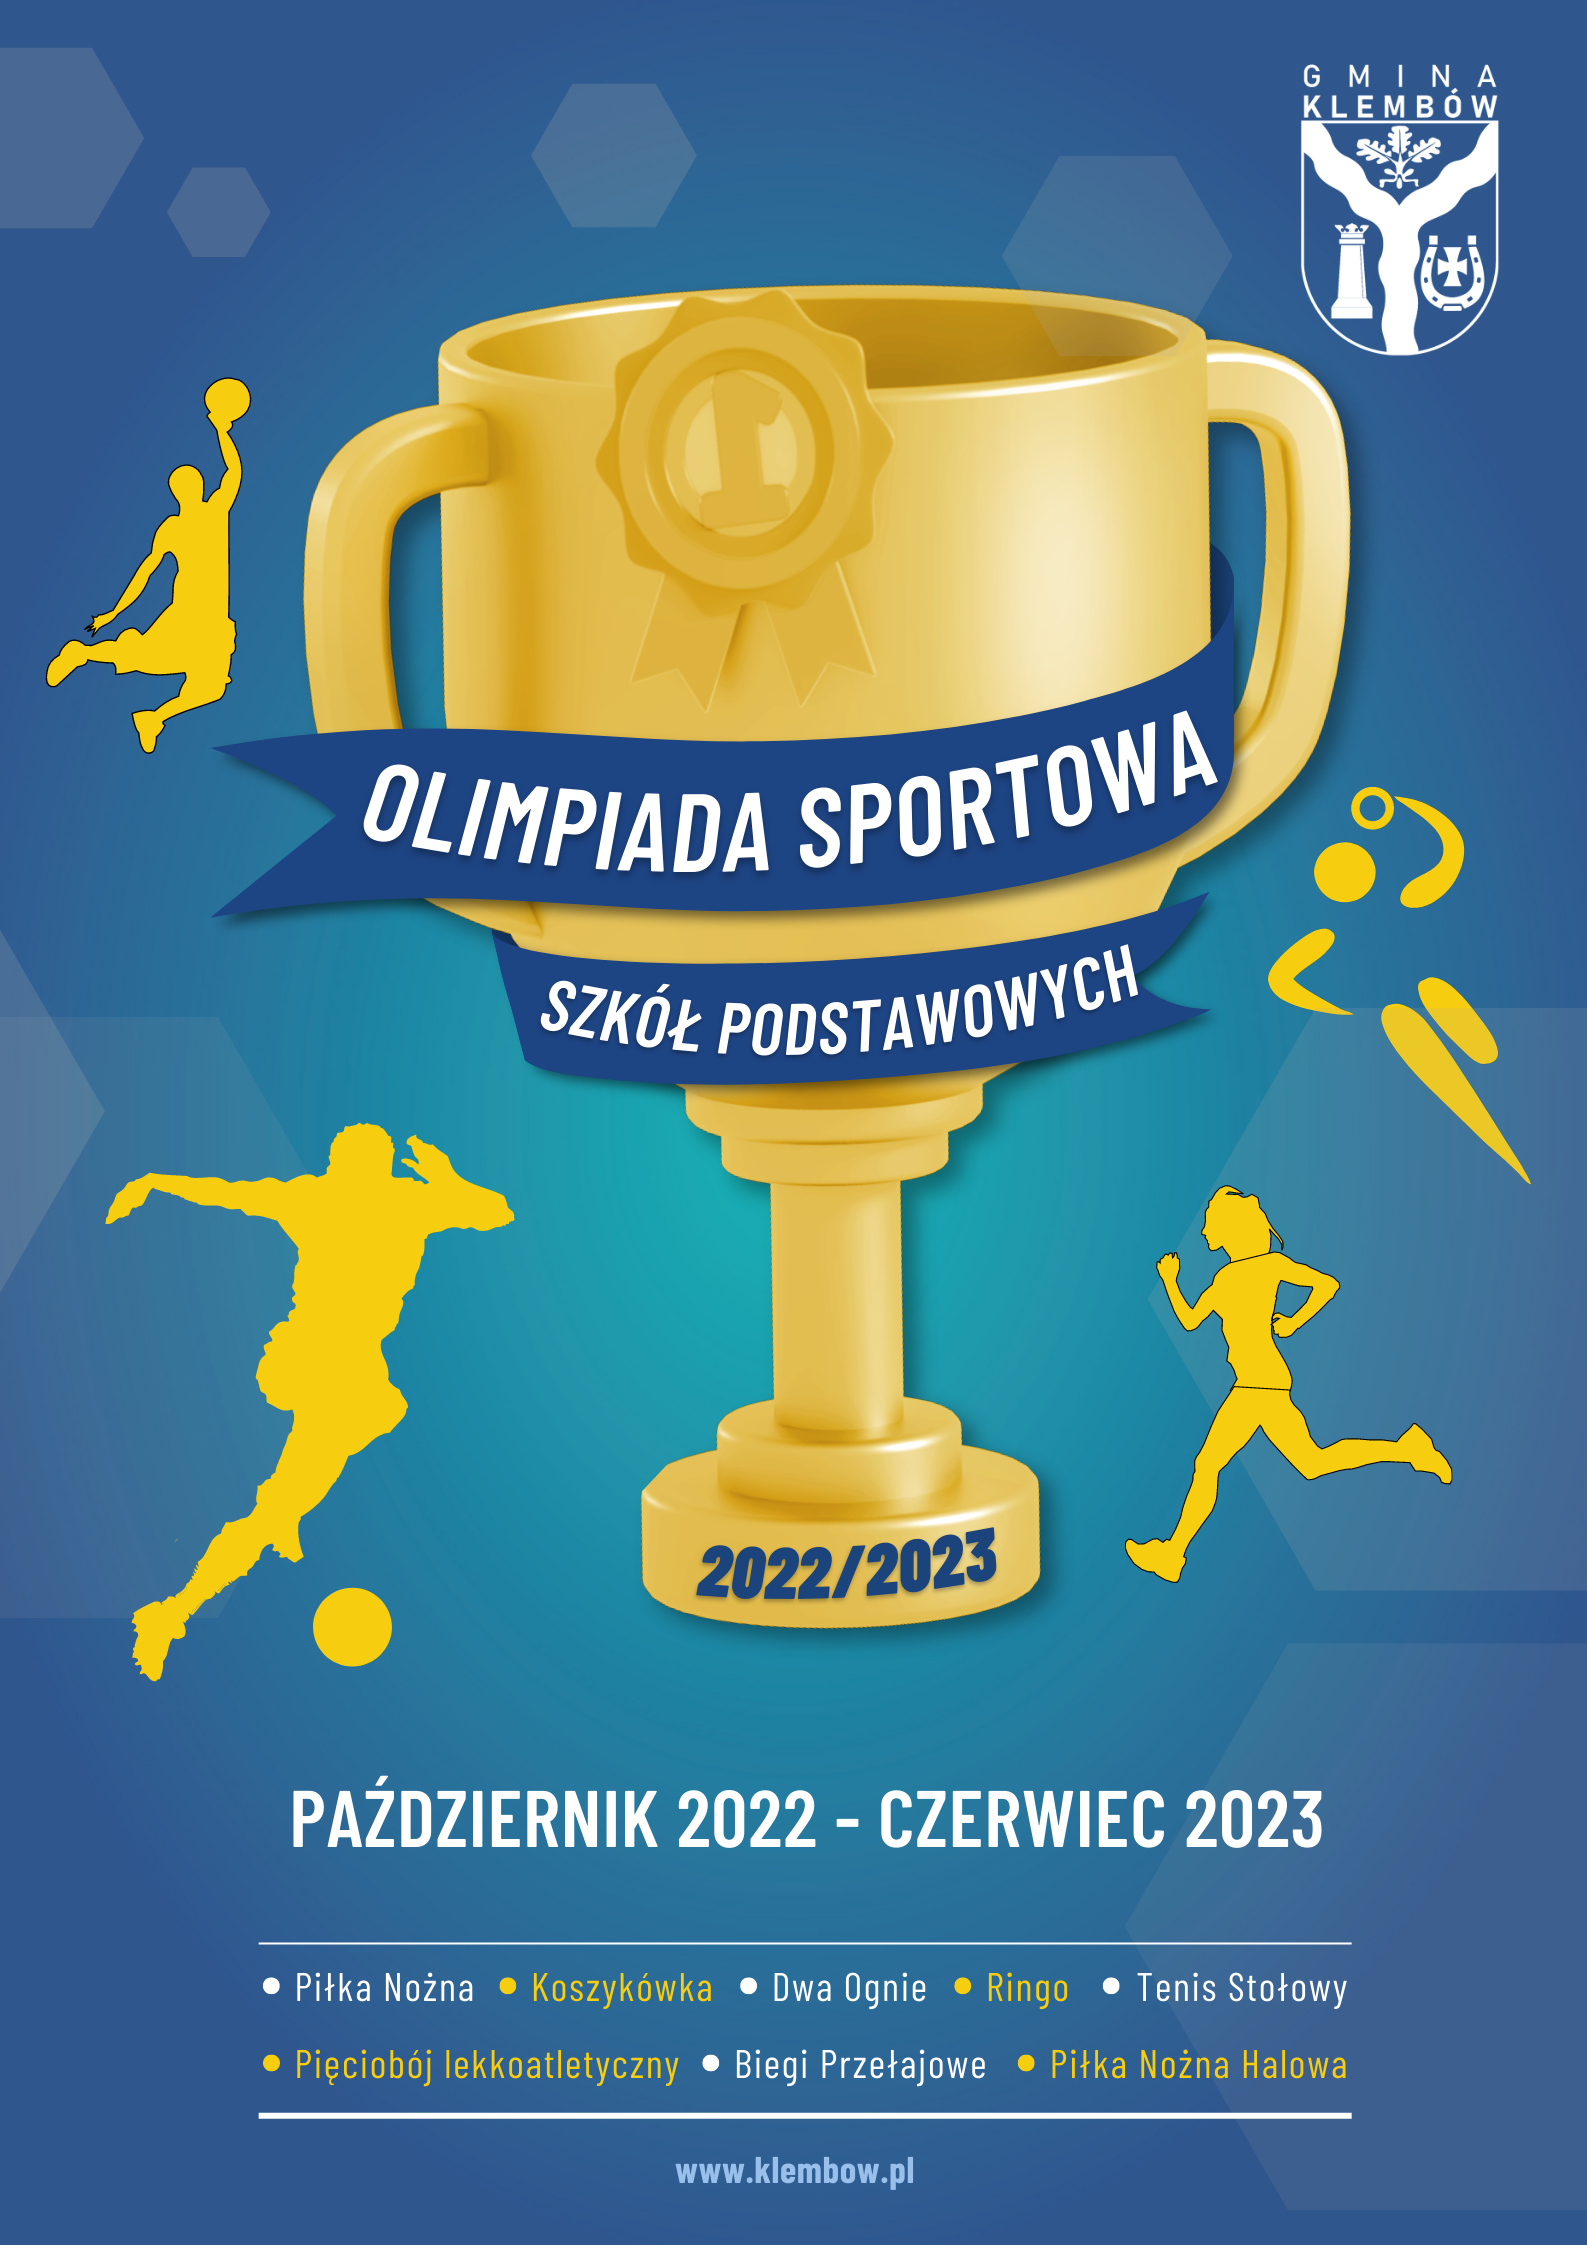 Olimpiada Sportowa Szkół Podstawowych w Gminie Klembów